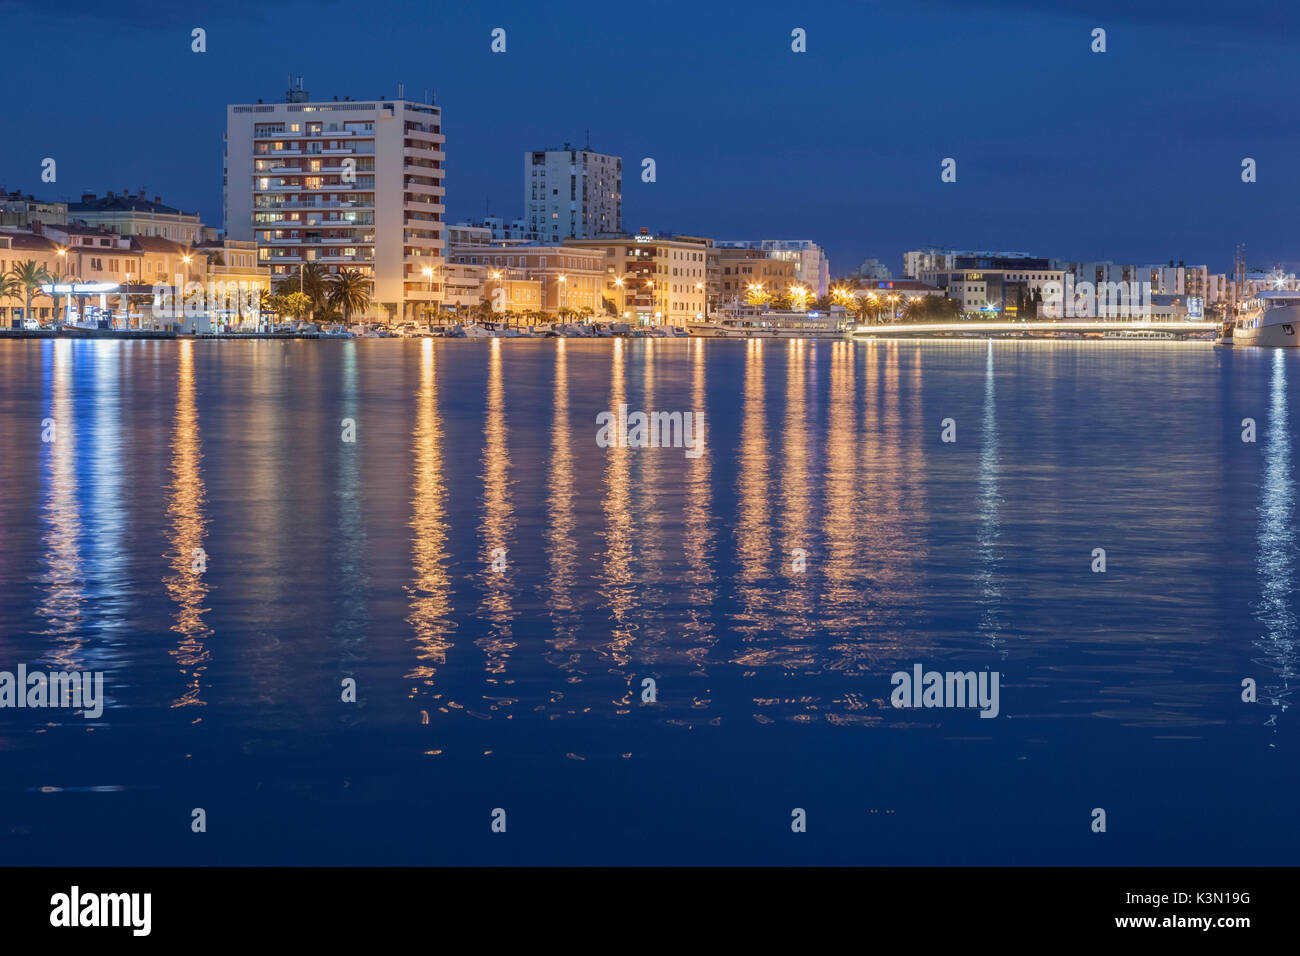 L'Europe, Croatie, Zadar. Gratte-ciel et palais dans la nuit à proximité de la zone portuaire Banque D'Images